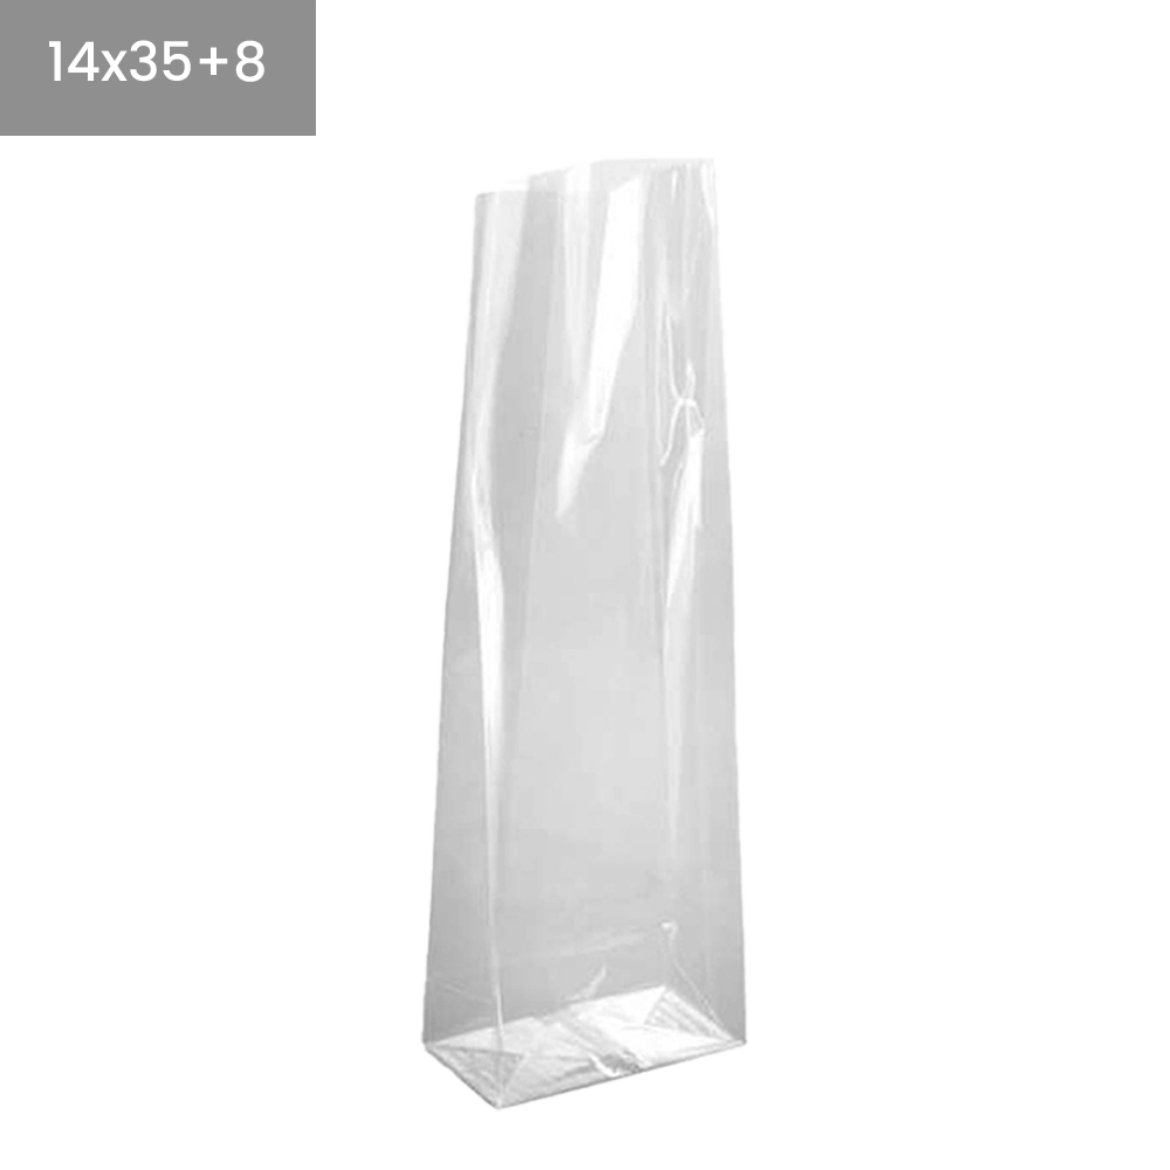 Bolsas de plástico transparentes base cuadrada 14x35+8